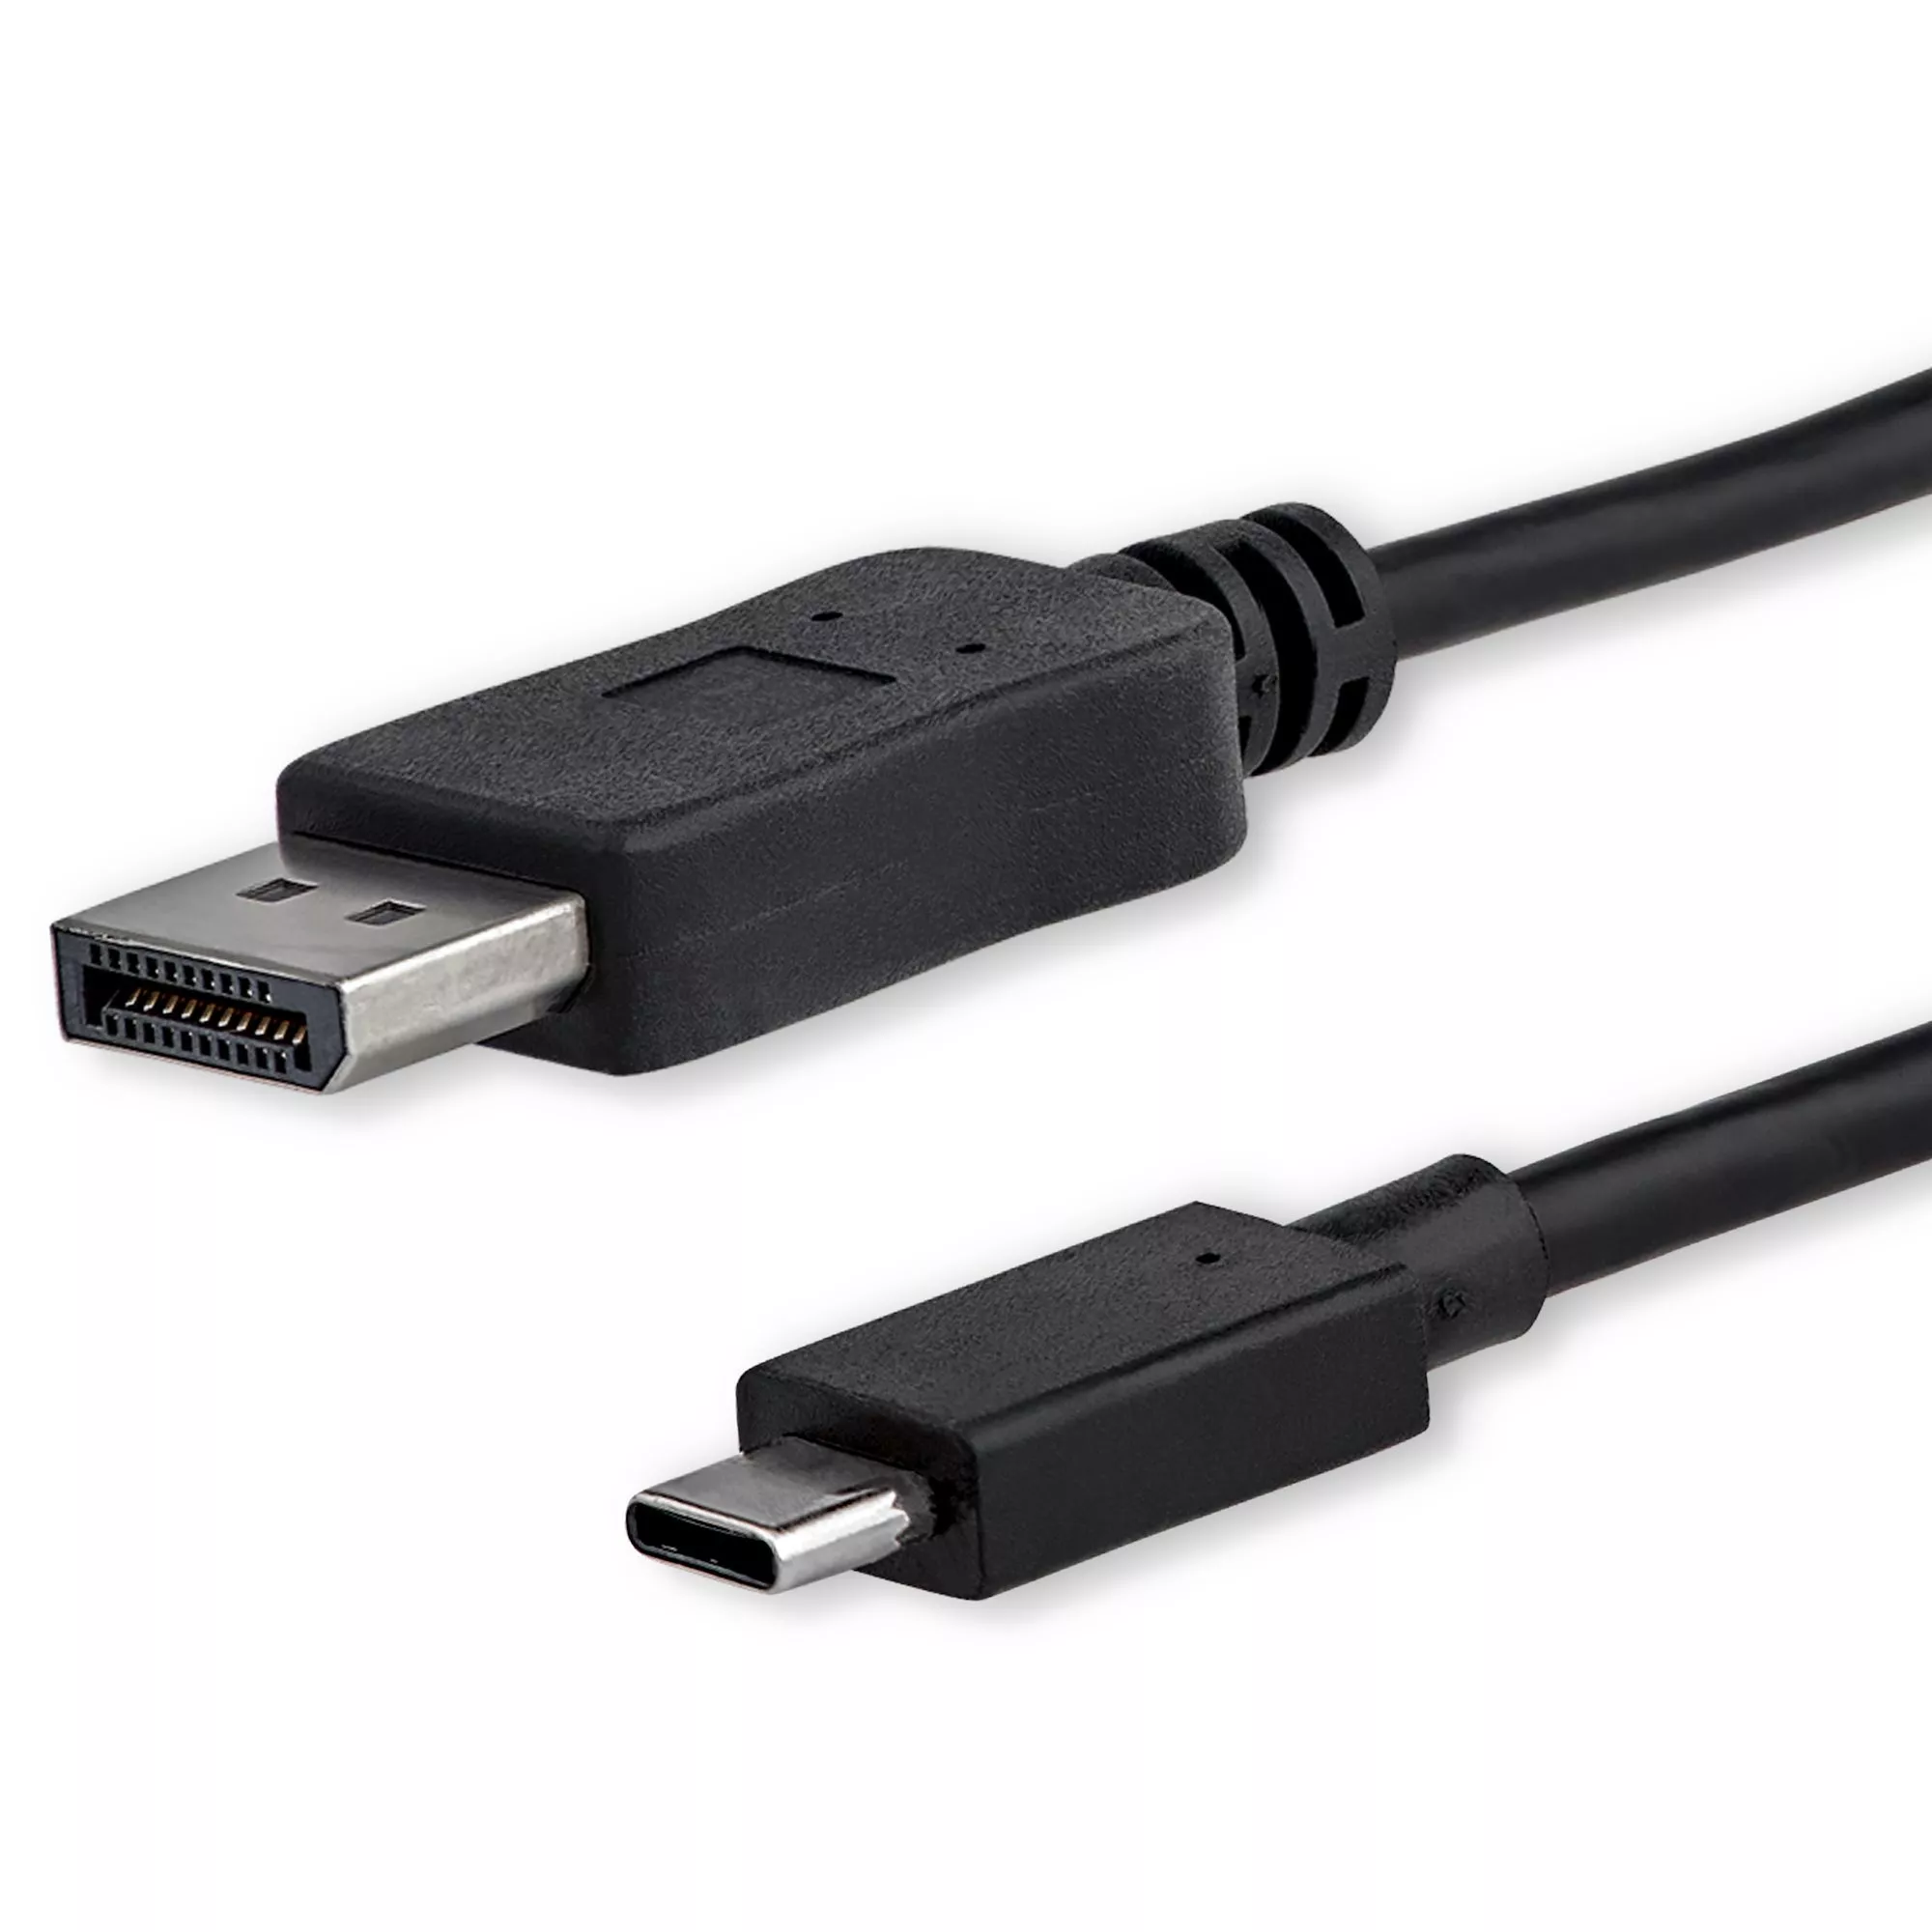 Revendeur officiel Câble pour Affichage StarTech.com Câble adaptateur USB Type-C vers DisplayPort